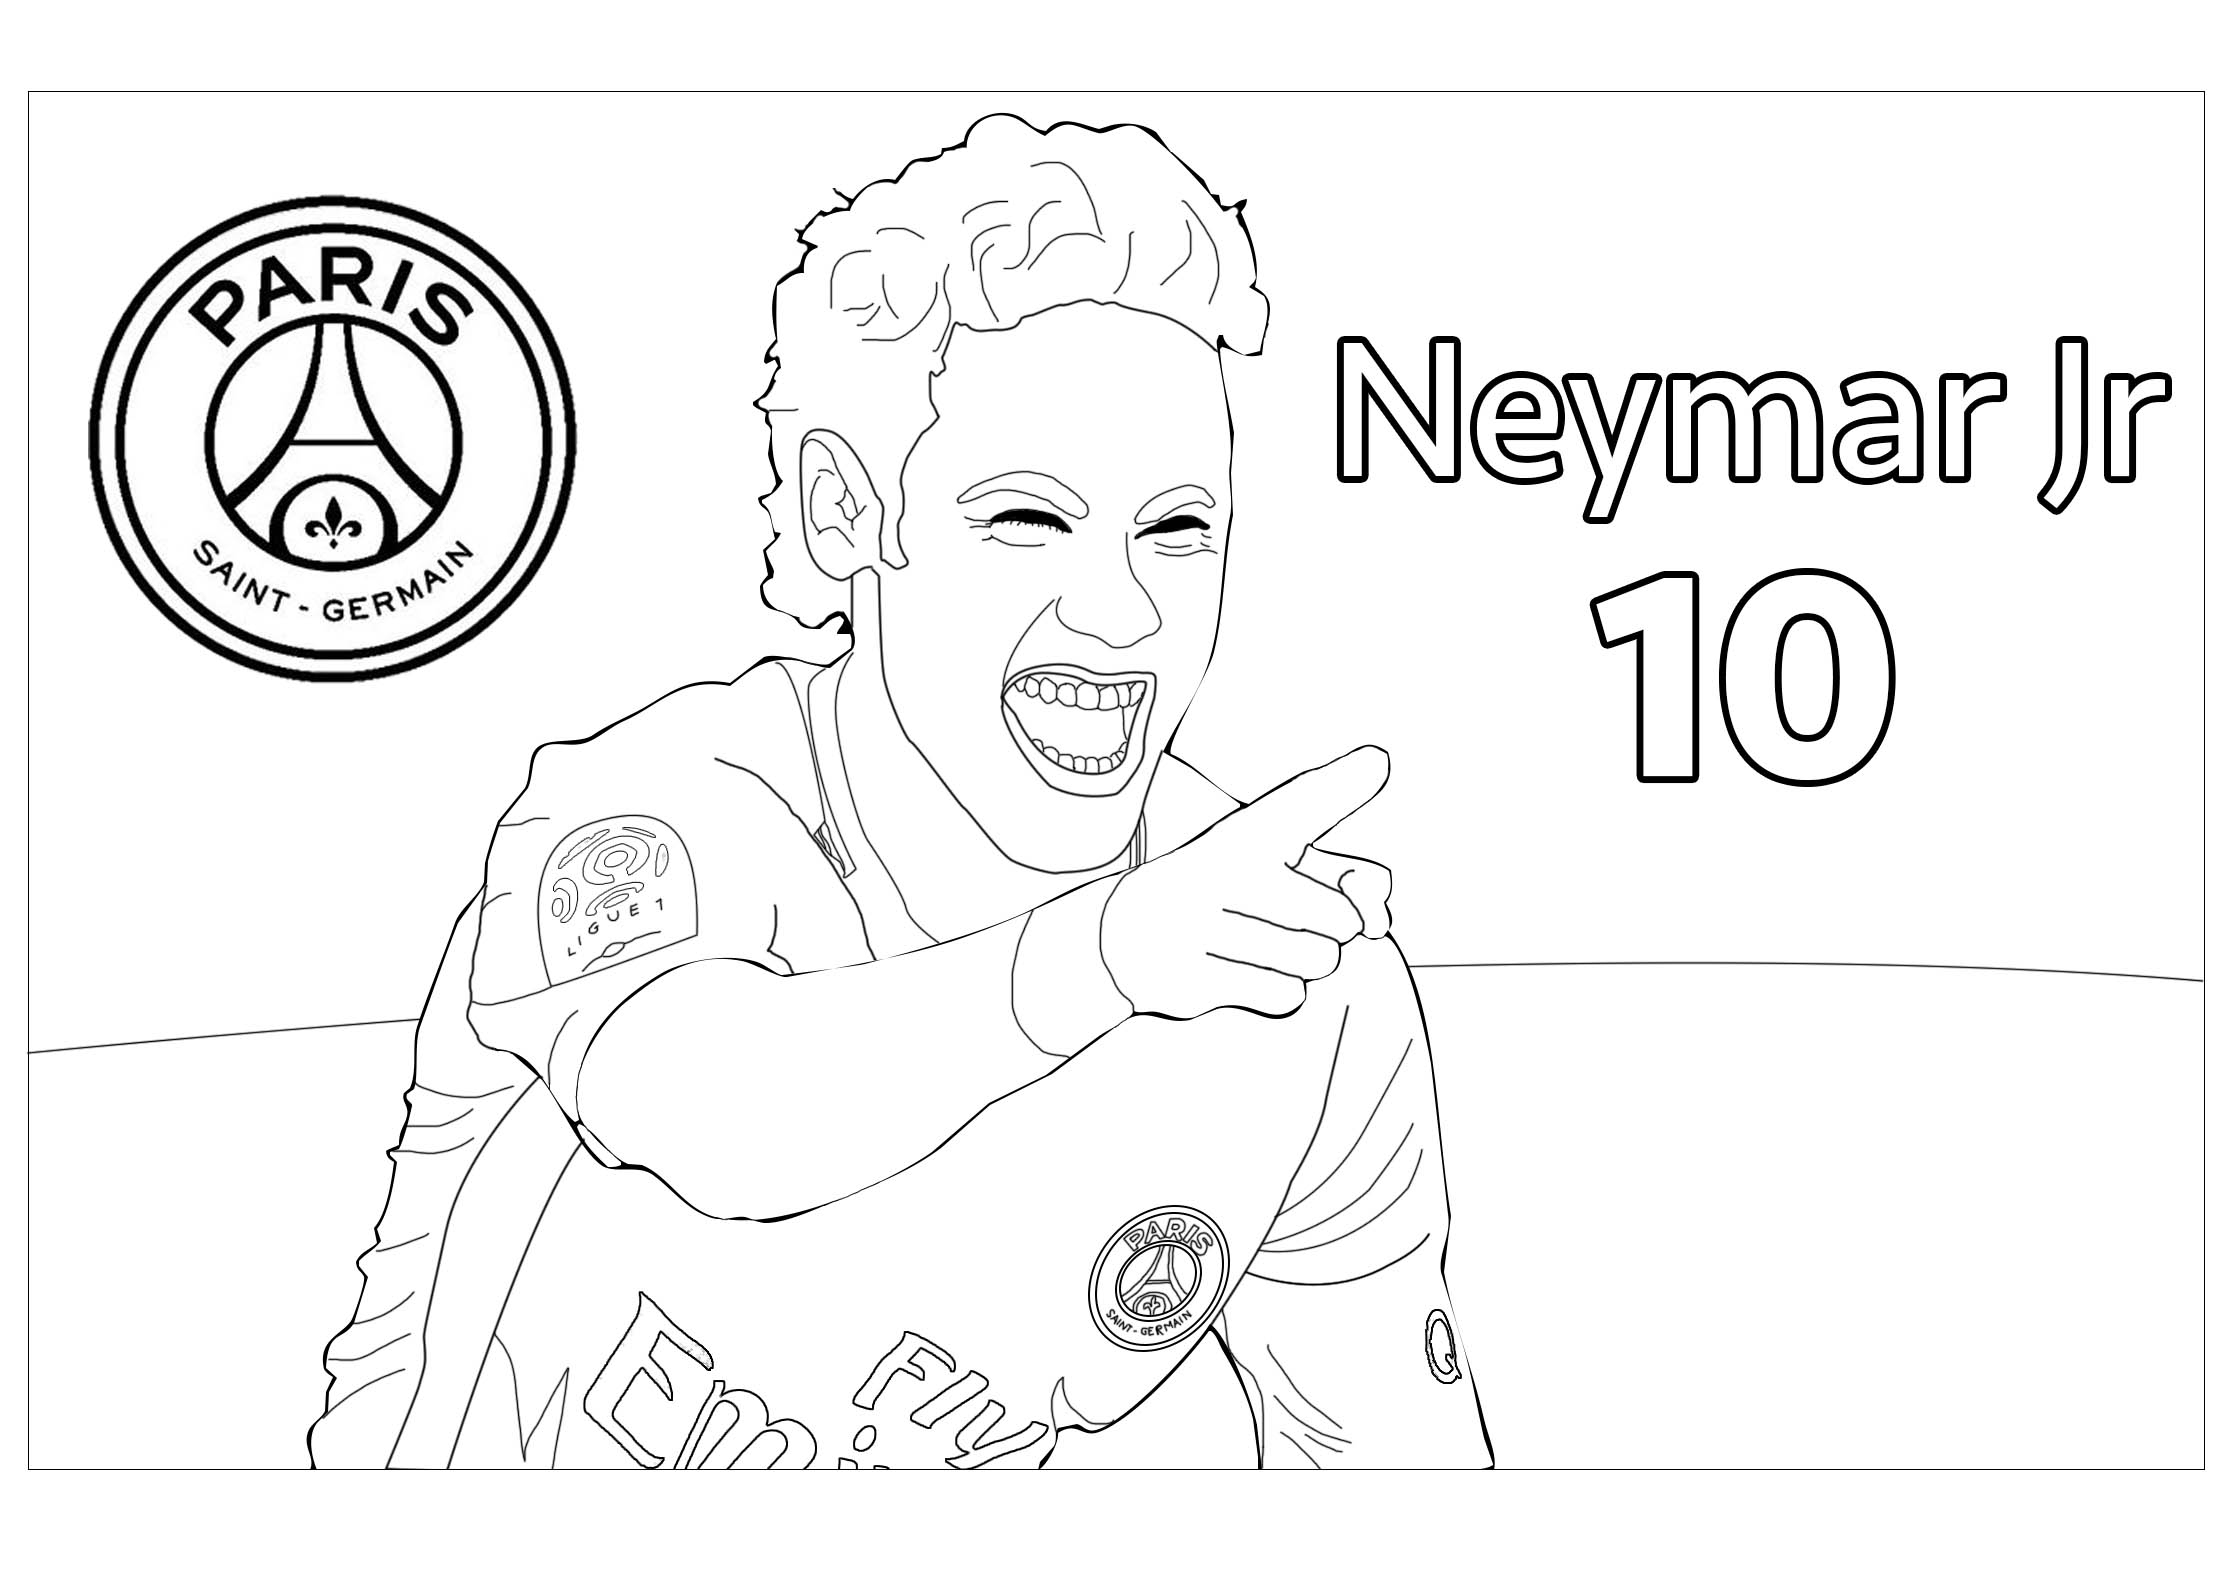 Neymar Jr - Version - 2 - Coloriage Football Pour Enfants intérieur Logo Psg A Colorier